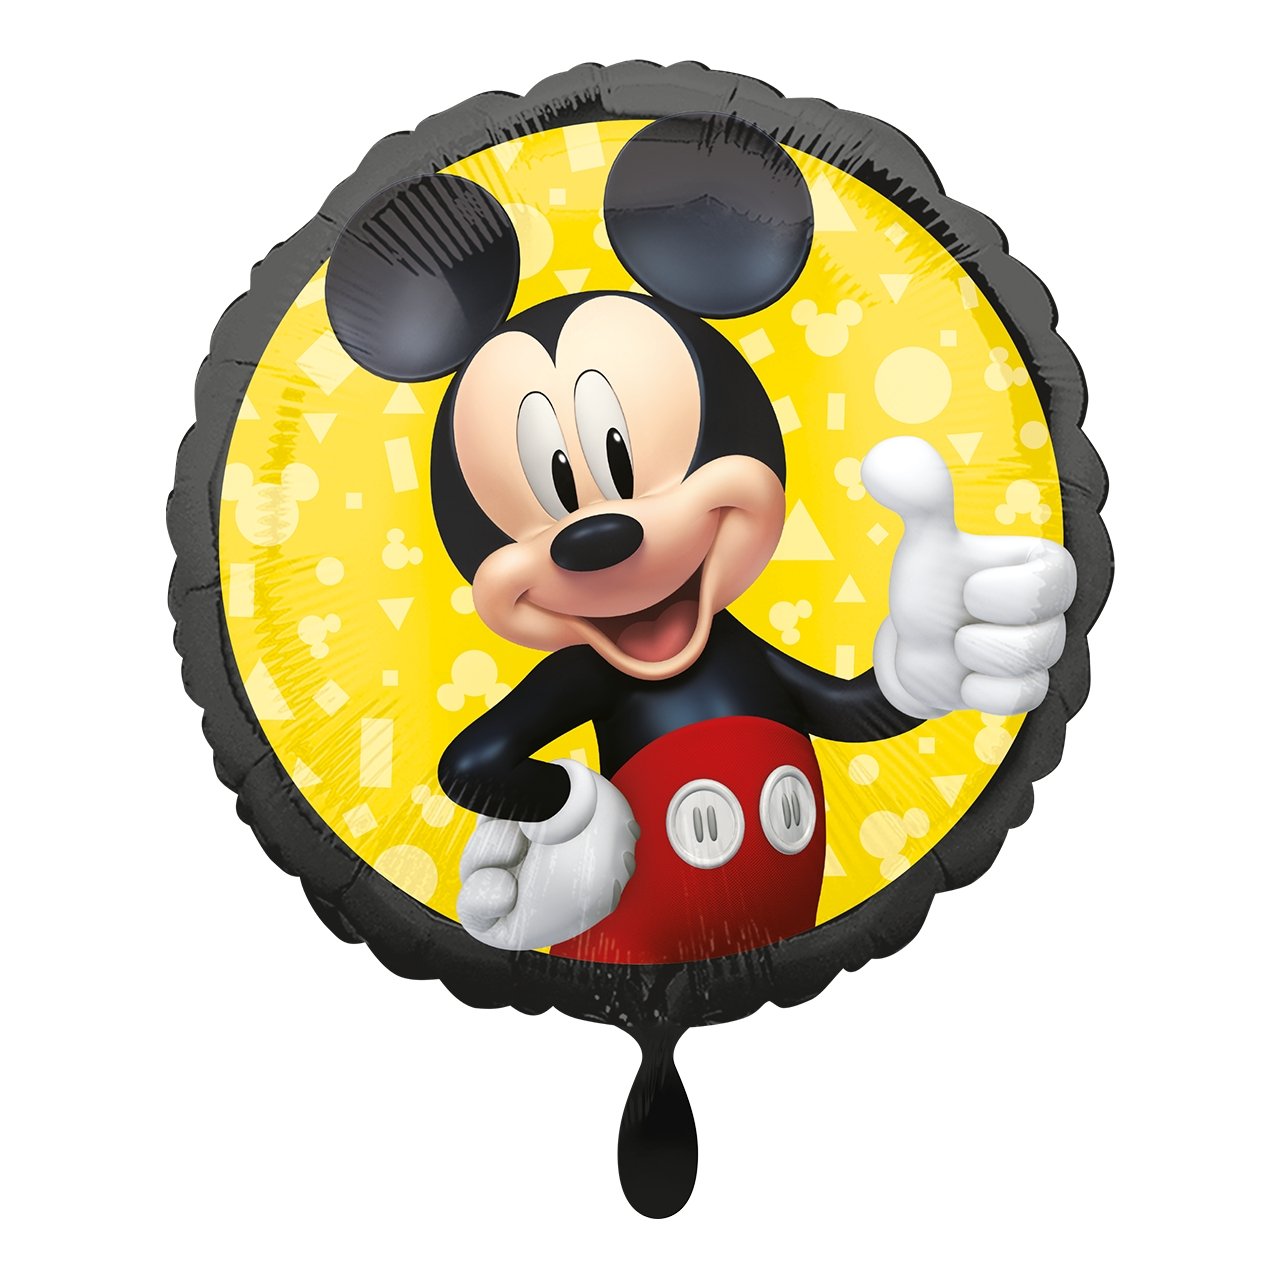 Partykarton "Mickey Mouse" 12 Teile - Party im Karton